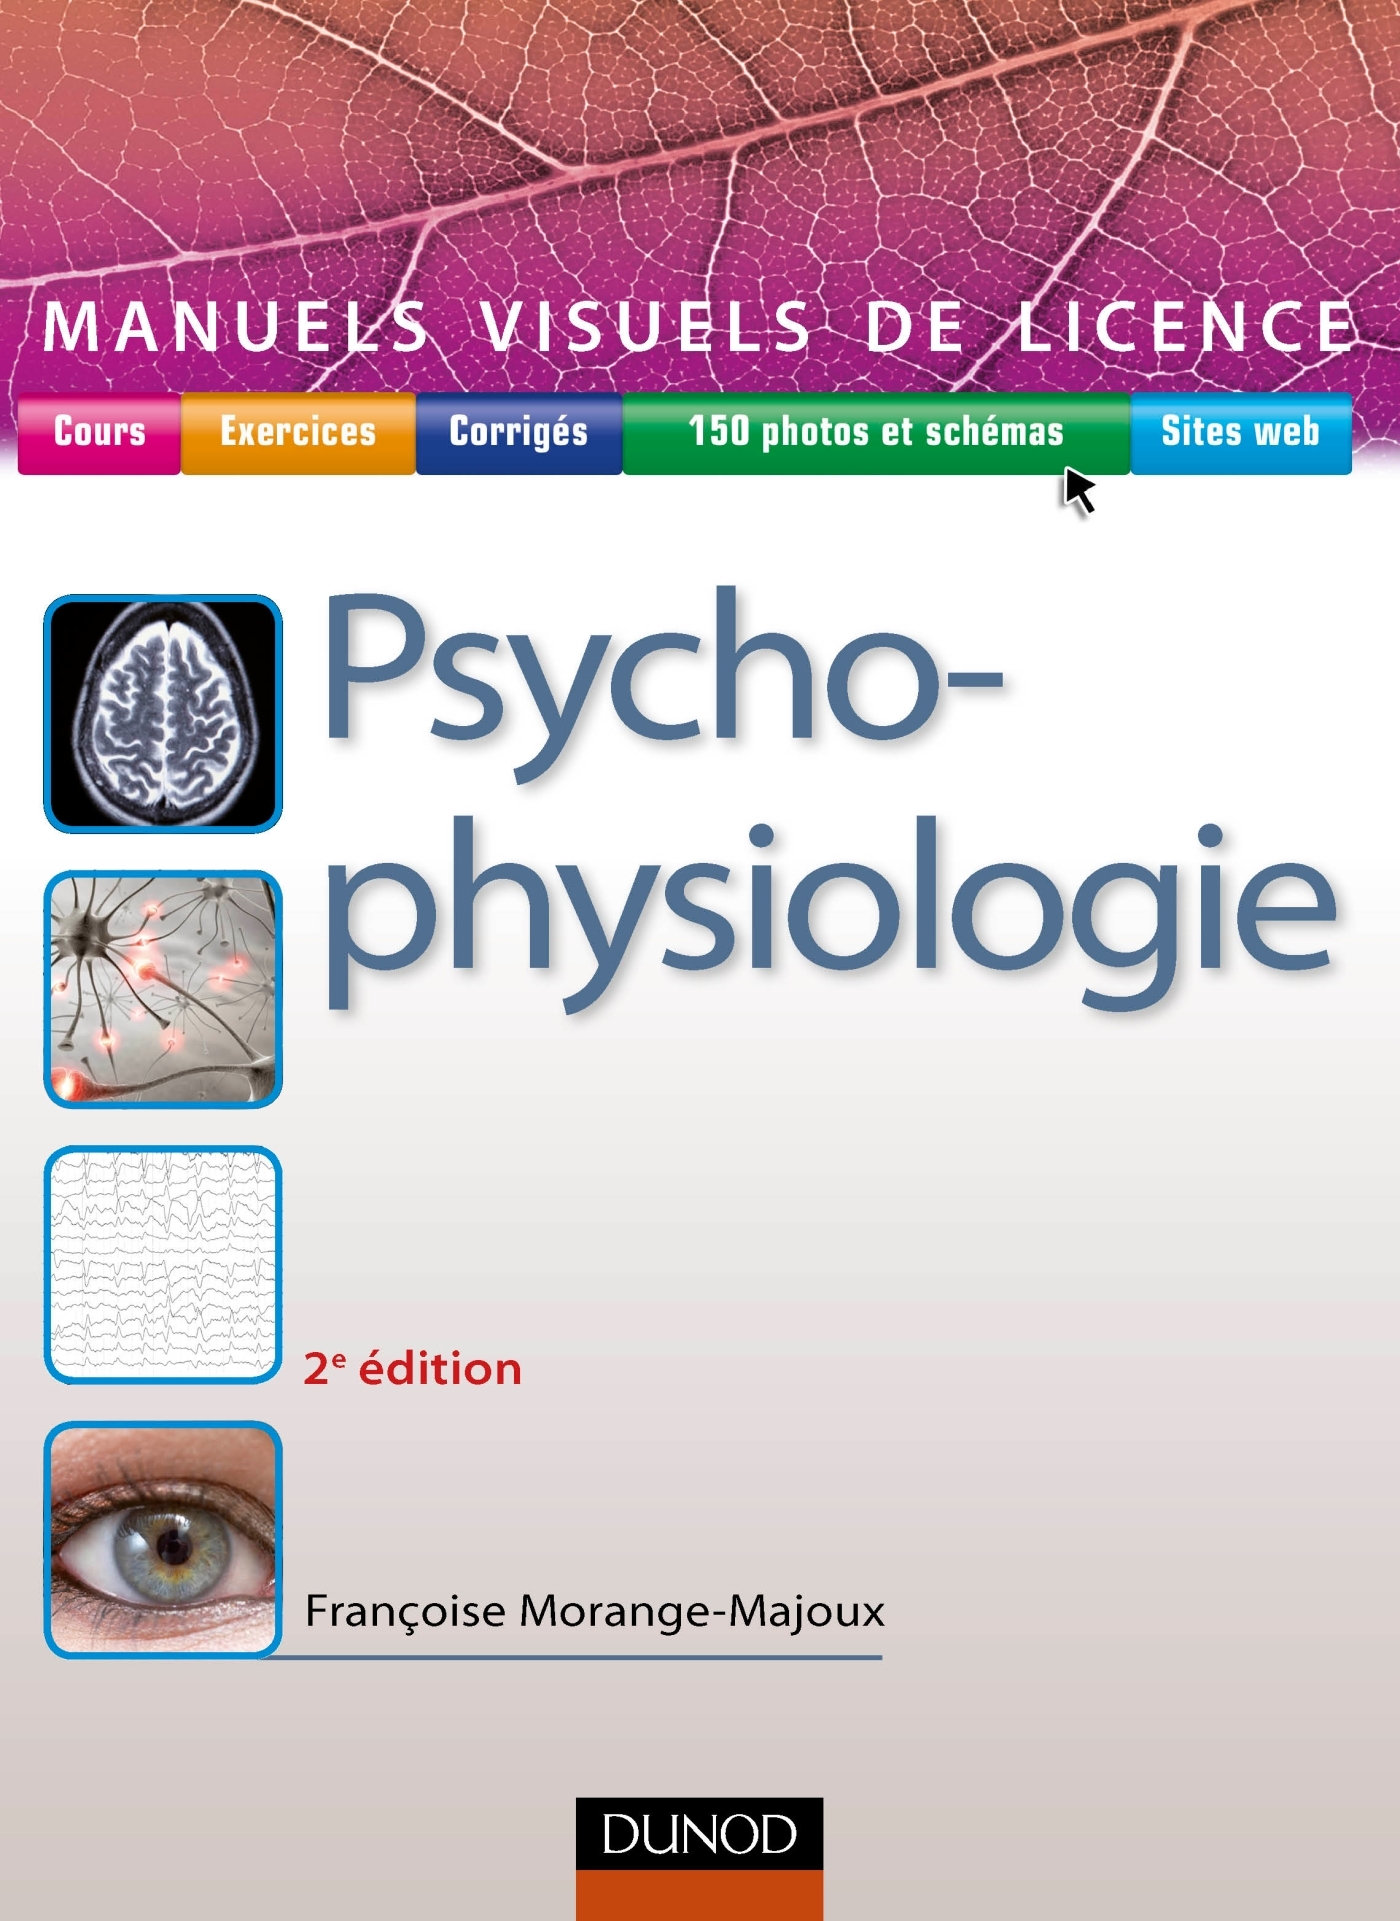 PDF Télécharger licence psychologie paris 13 Gratuit PDF  PDFprof.com